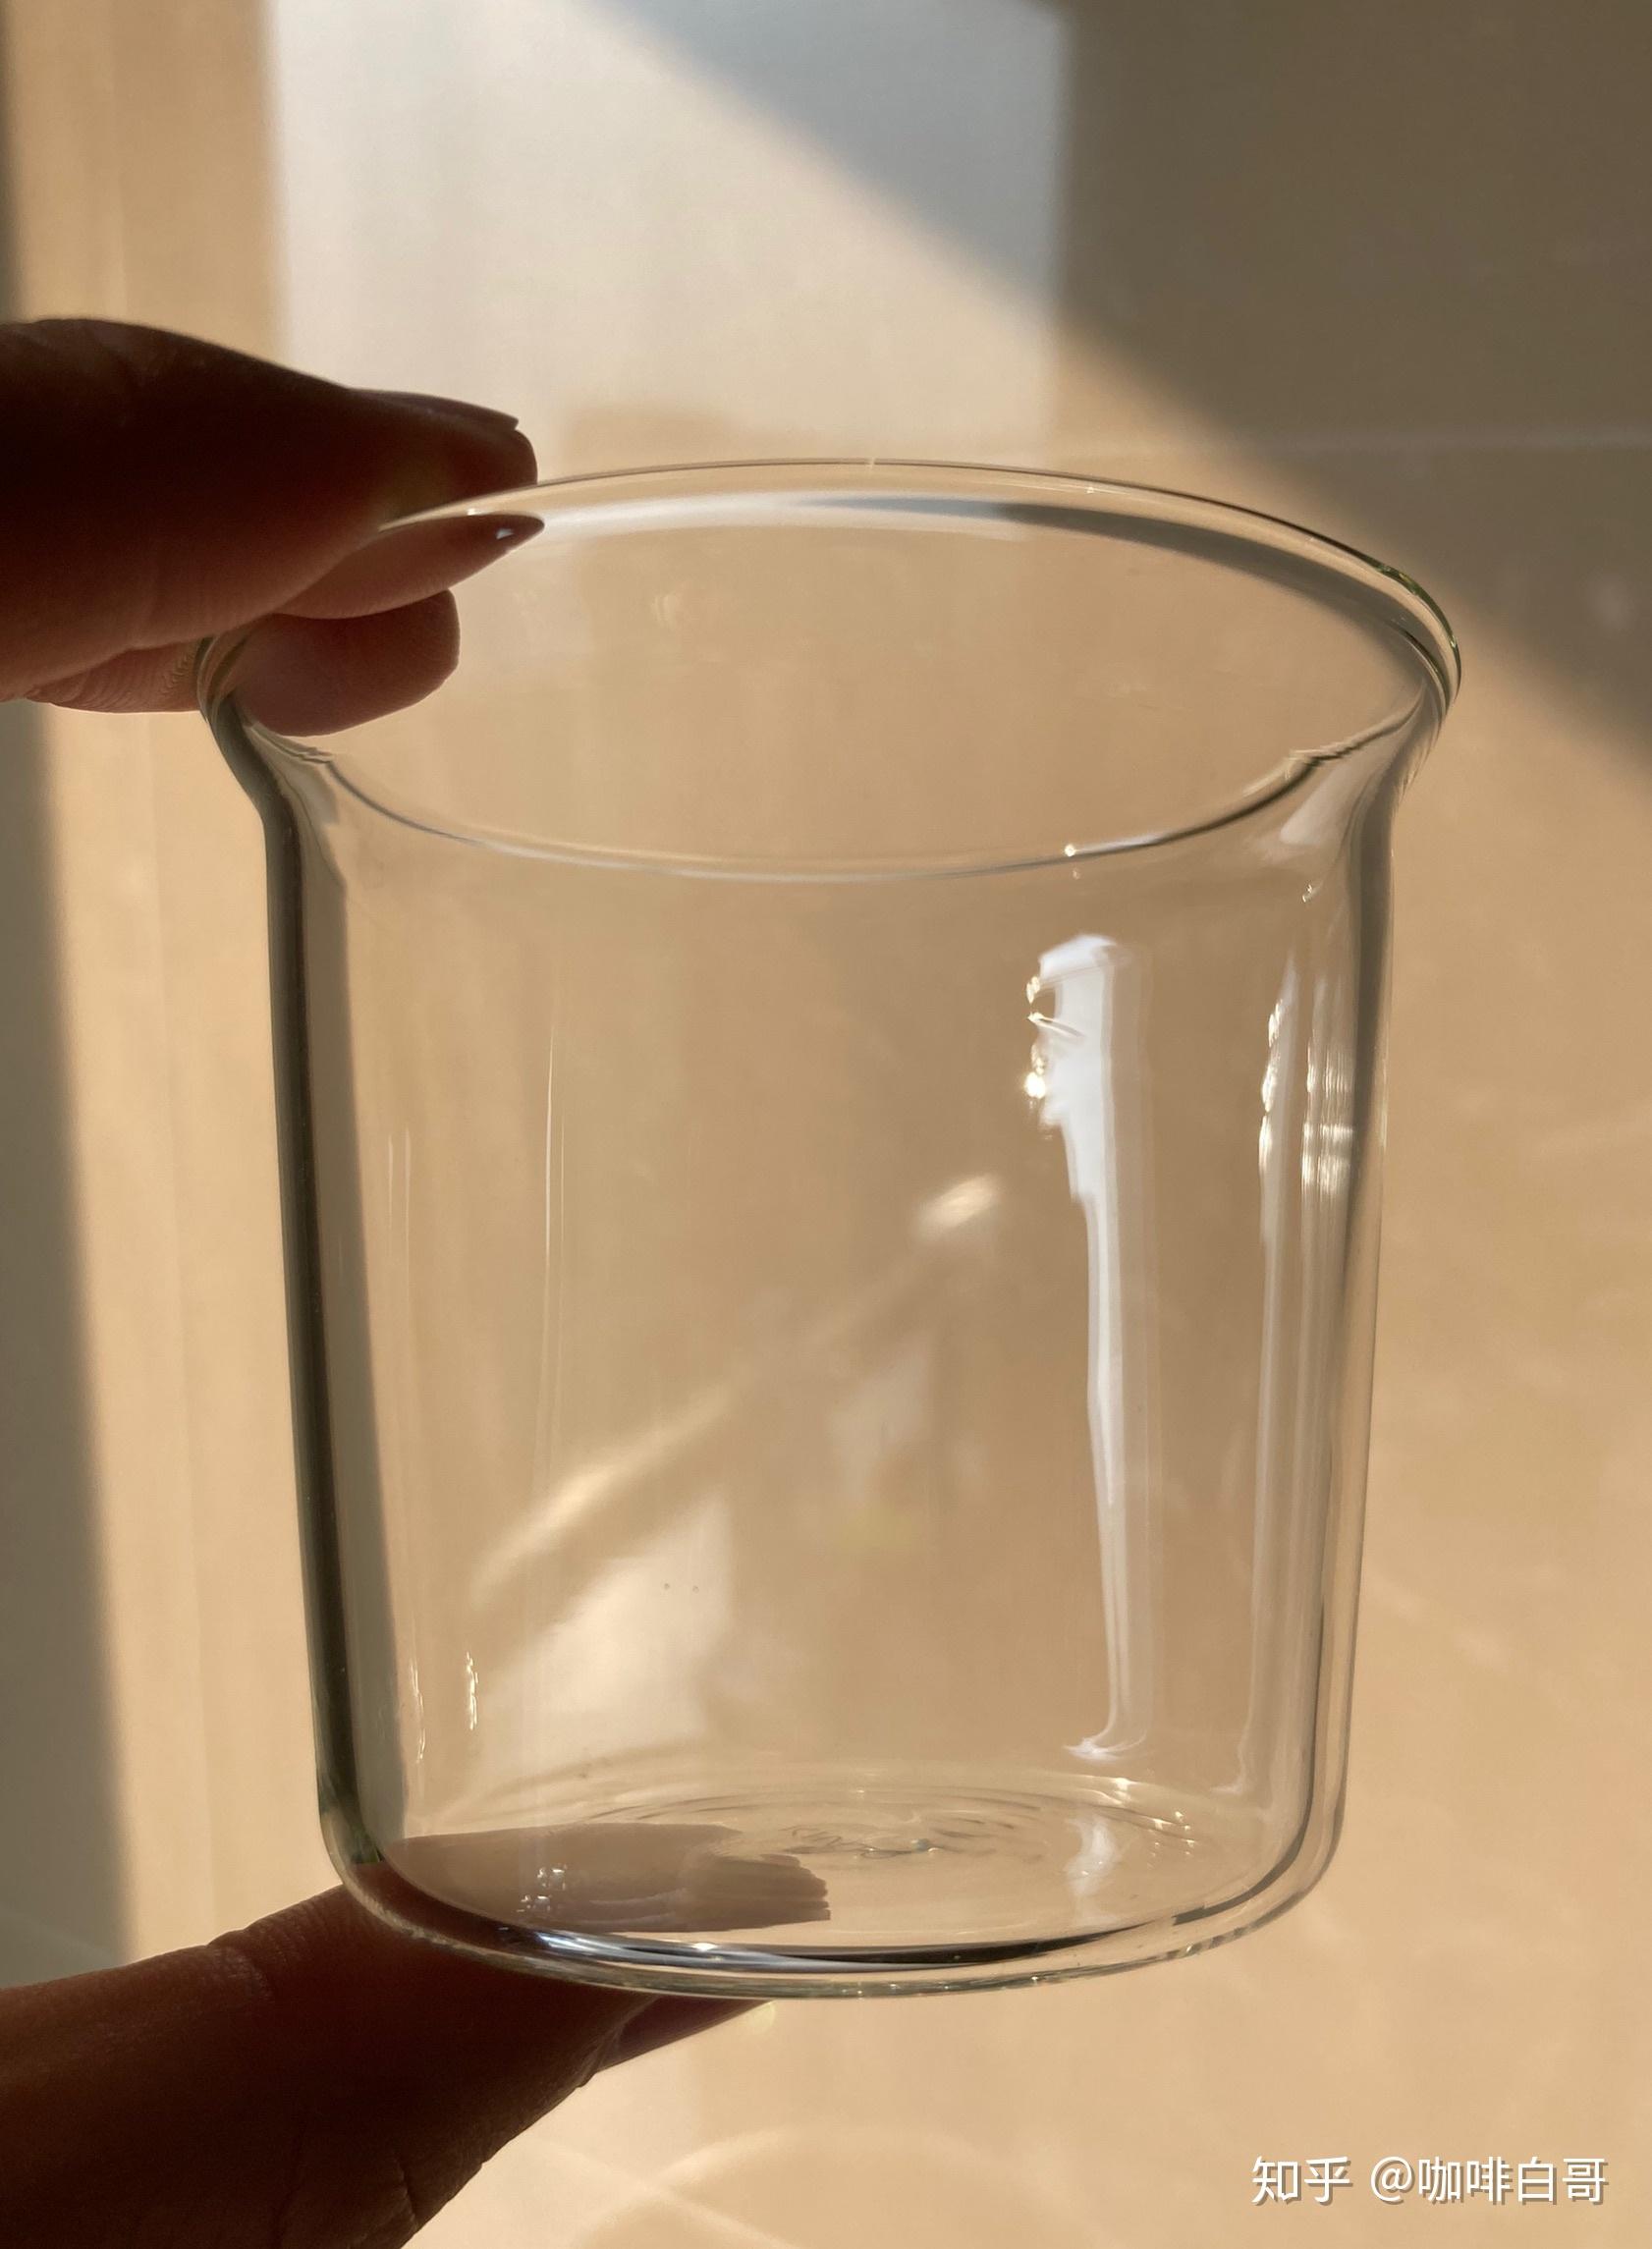 海绵长柄杯刷 洗杯子折叠擦瓶刷 清洗保温杯杯刷海绵 清洁奶瓶刷-阿里巴巴